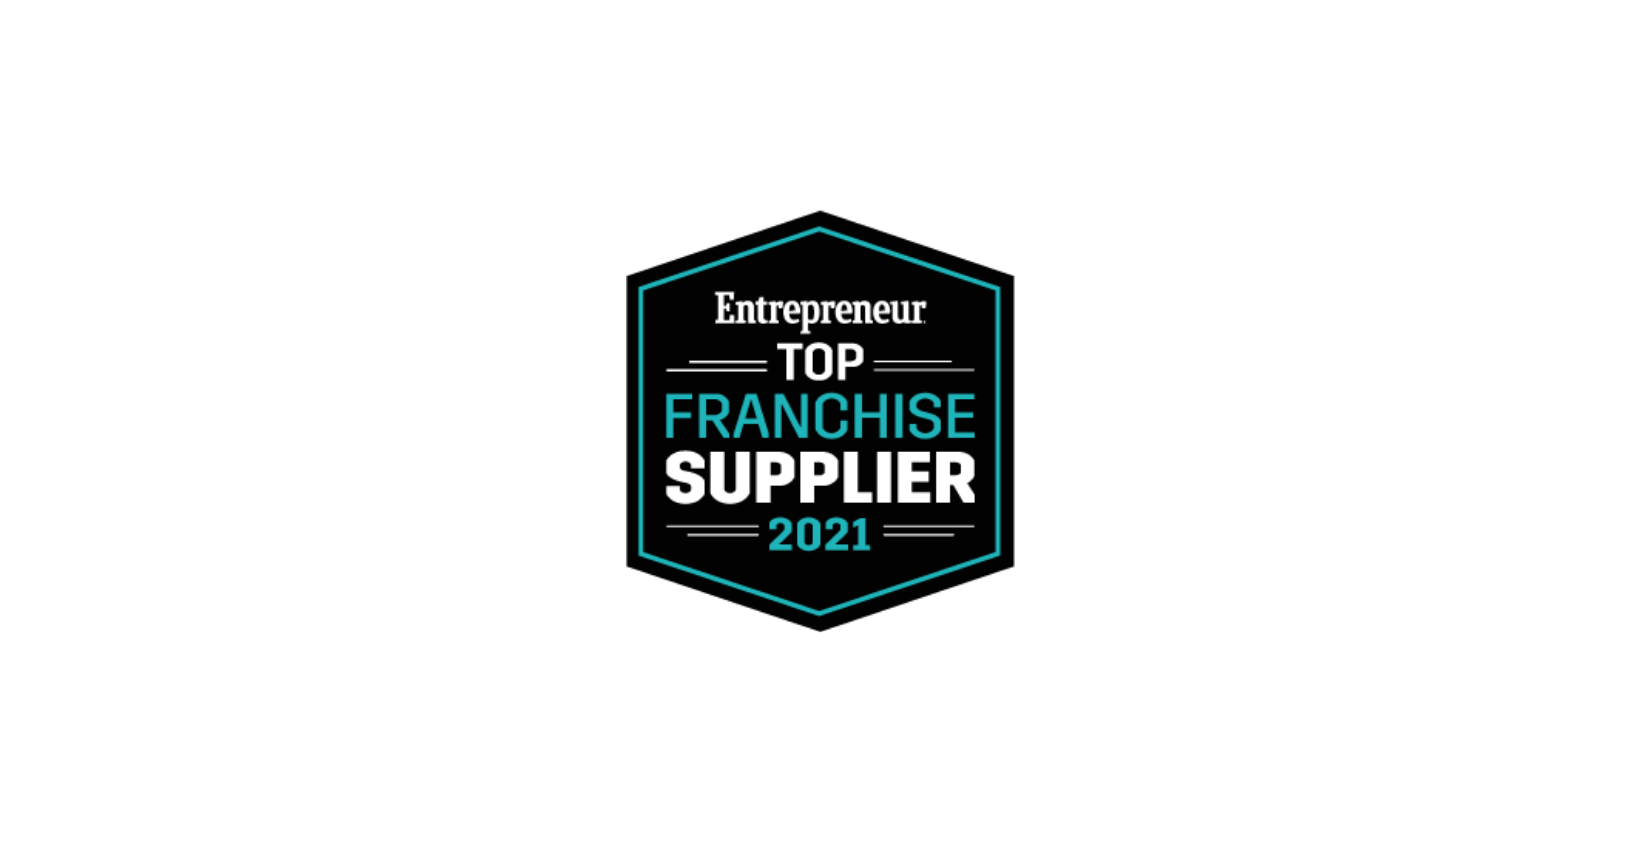 Entrepreneur Top Franchise Supplier badge for 2021